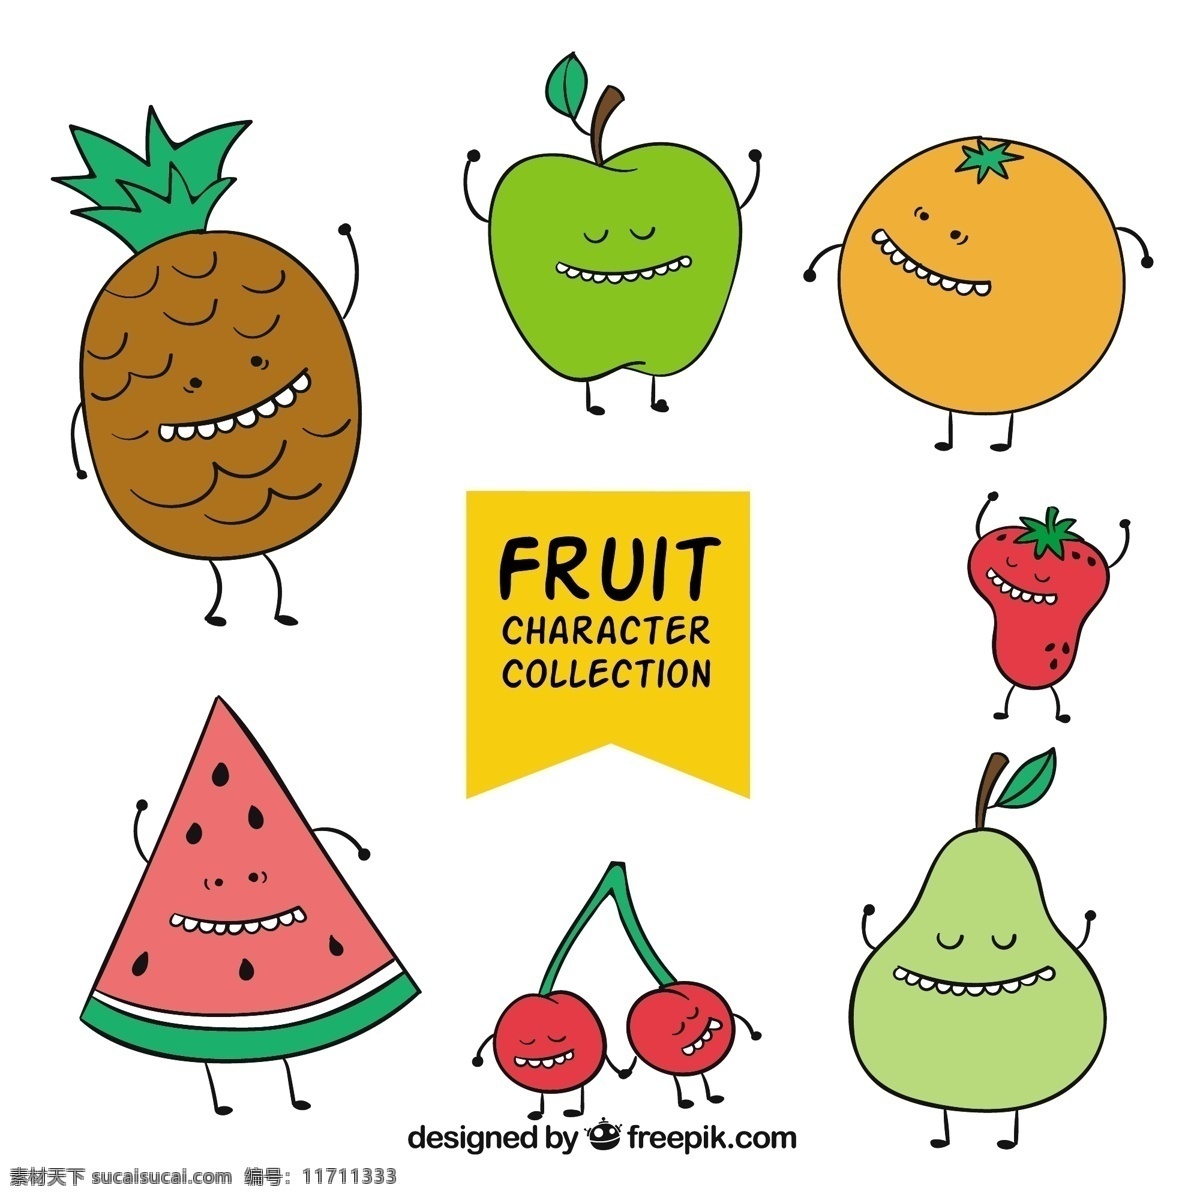 舞蹈 水果 字符集 食物 夏天 性格 可爱 橙色 蔬菜 热带 苹果 烹饪 饮料 绘画 有机 果汁 天然 健康 草莓 菠萝